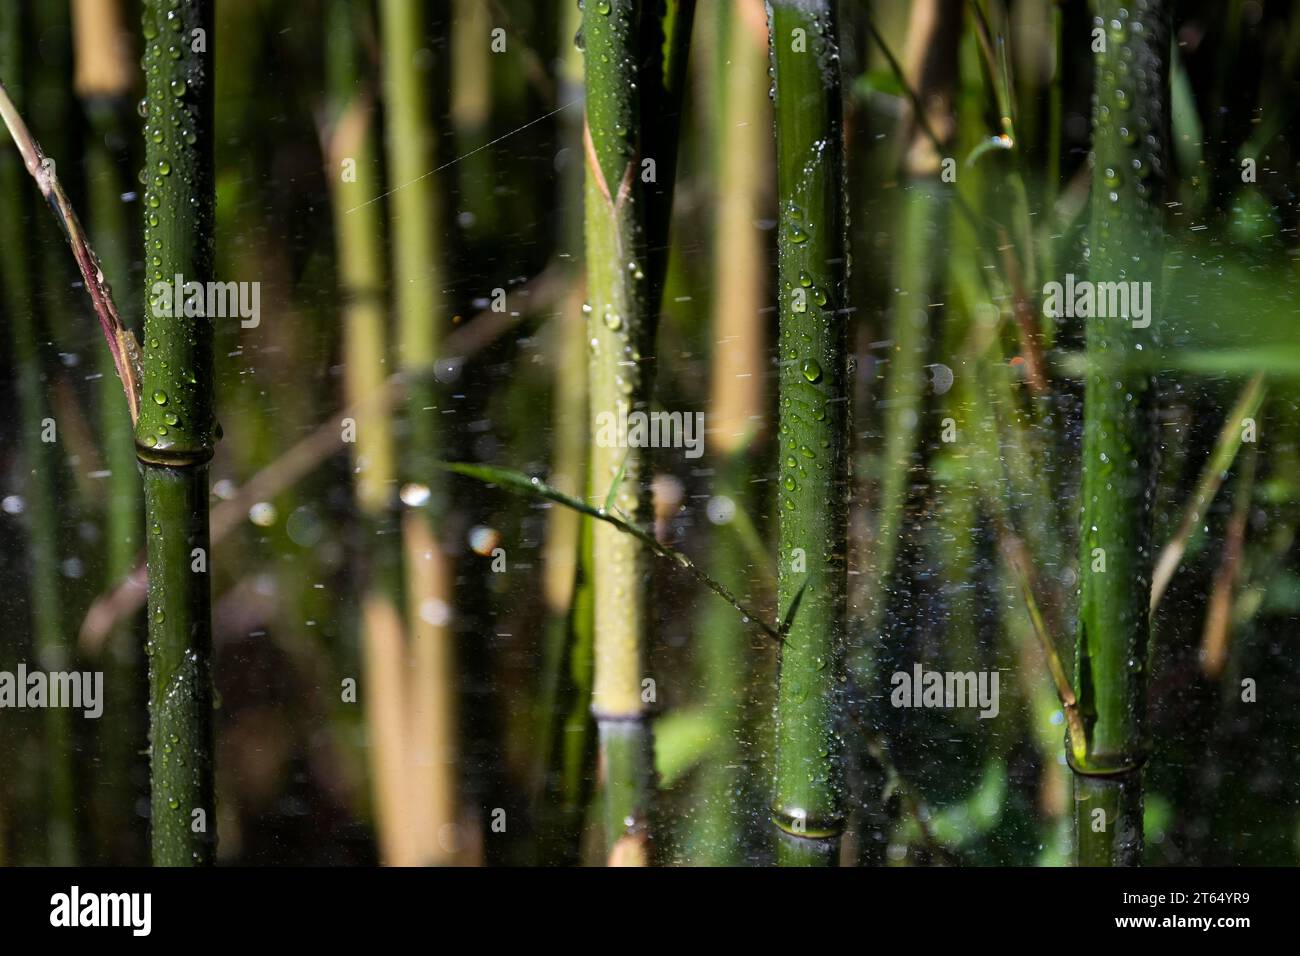 Bamboo being watered, Royal Botanic Gardens (Kew Gardens), Great Britain Stock Photo